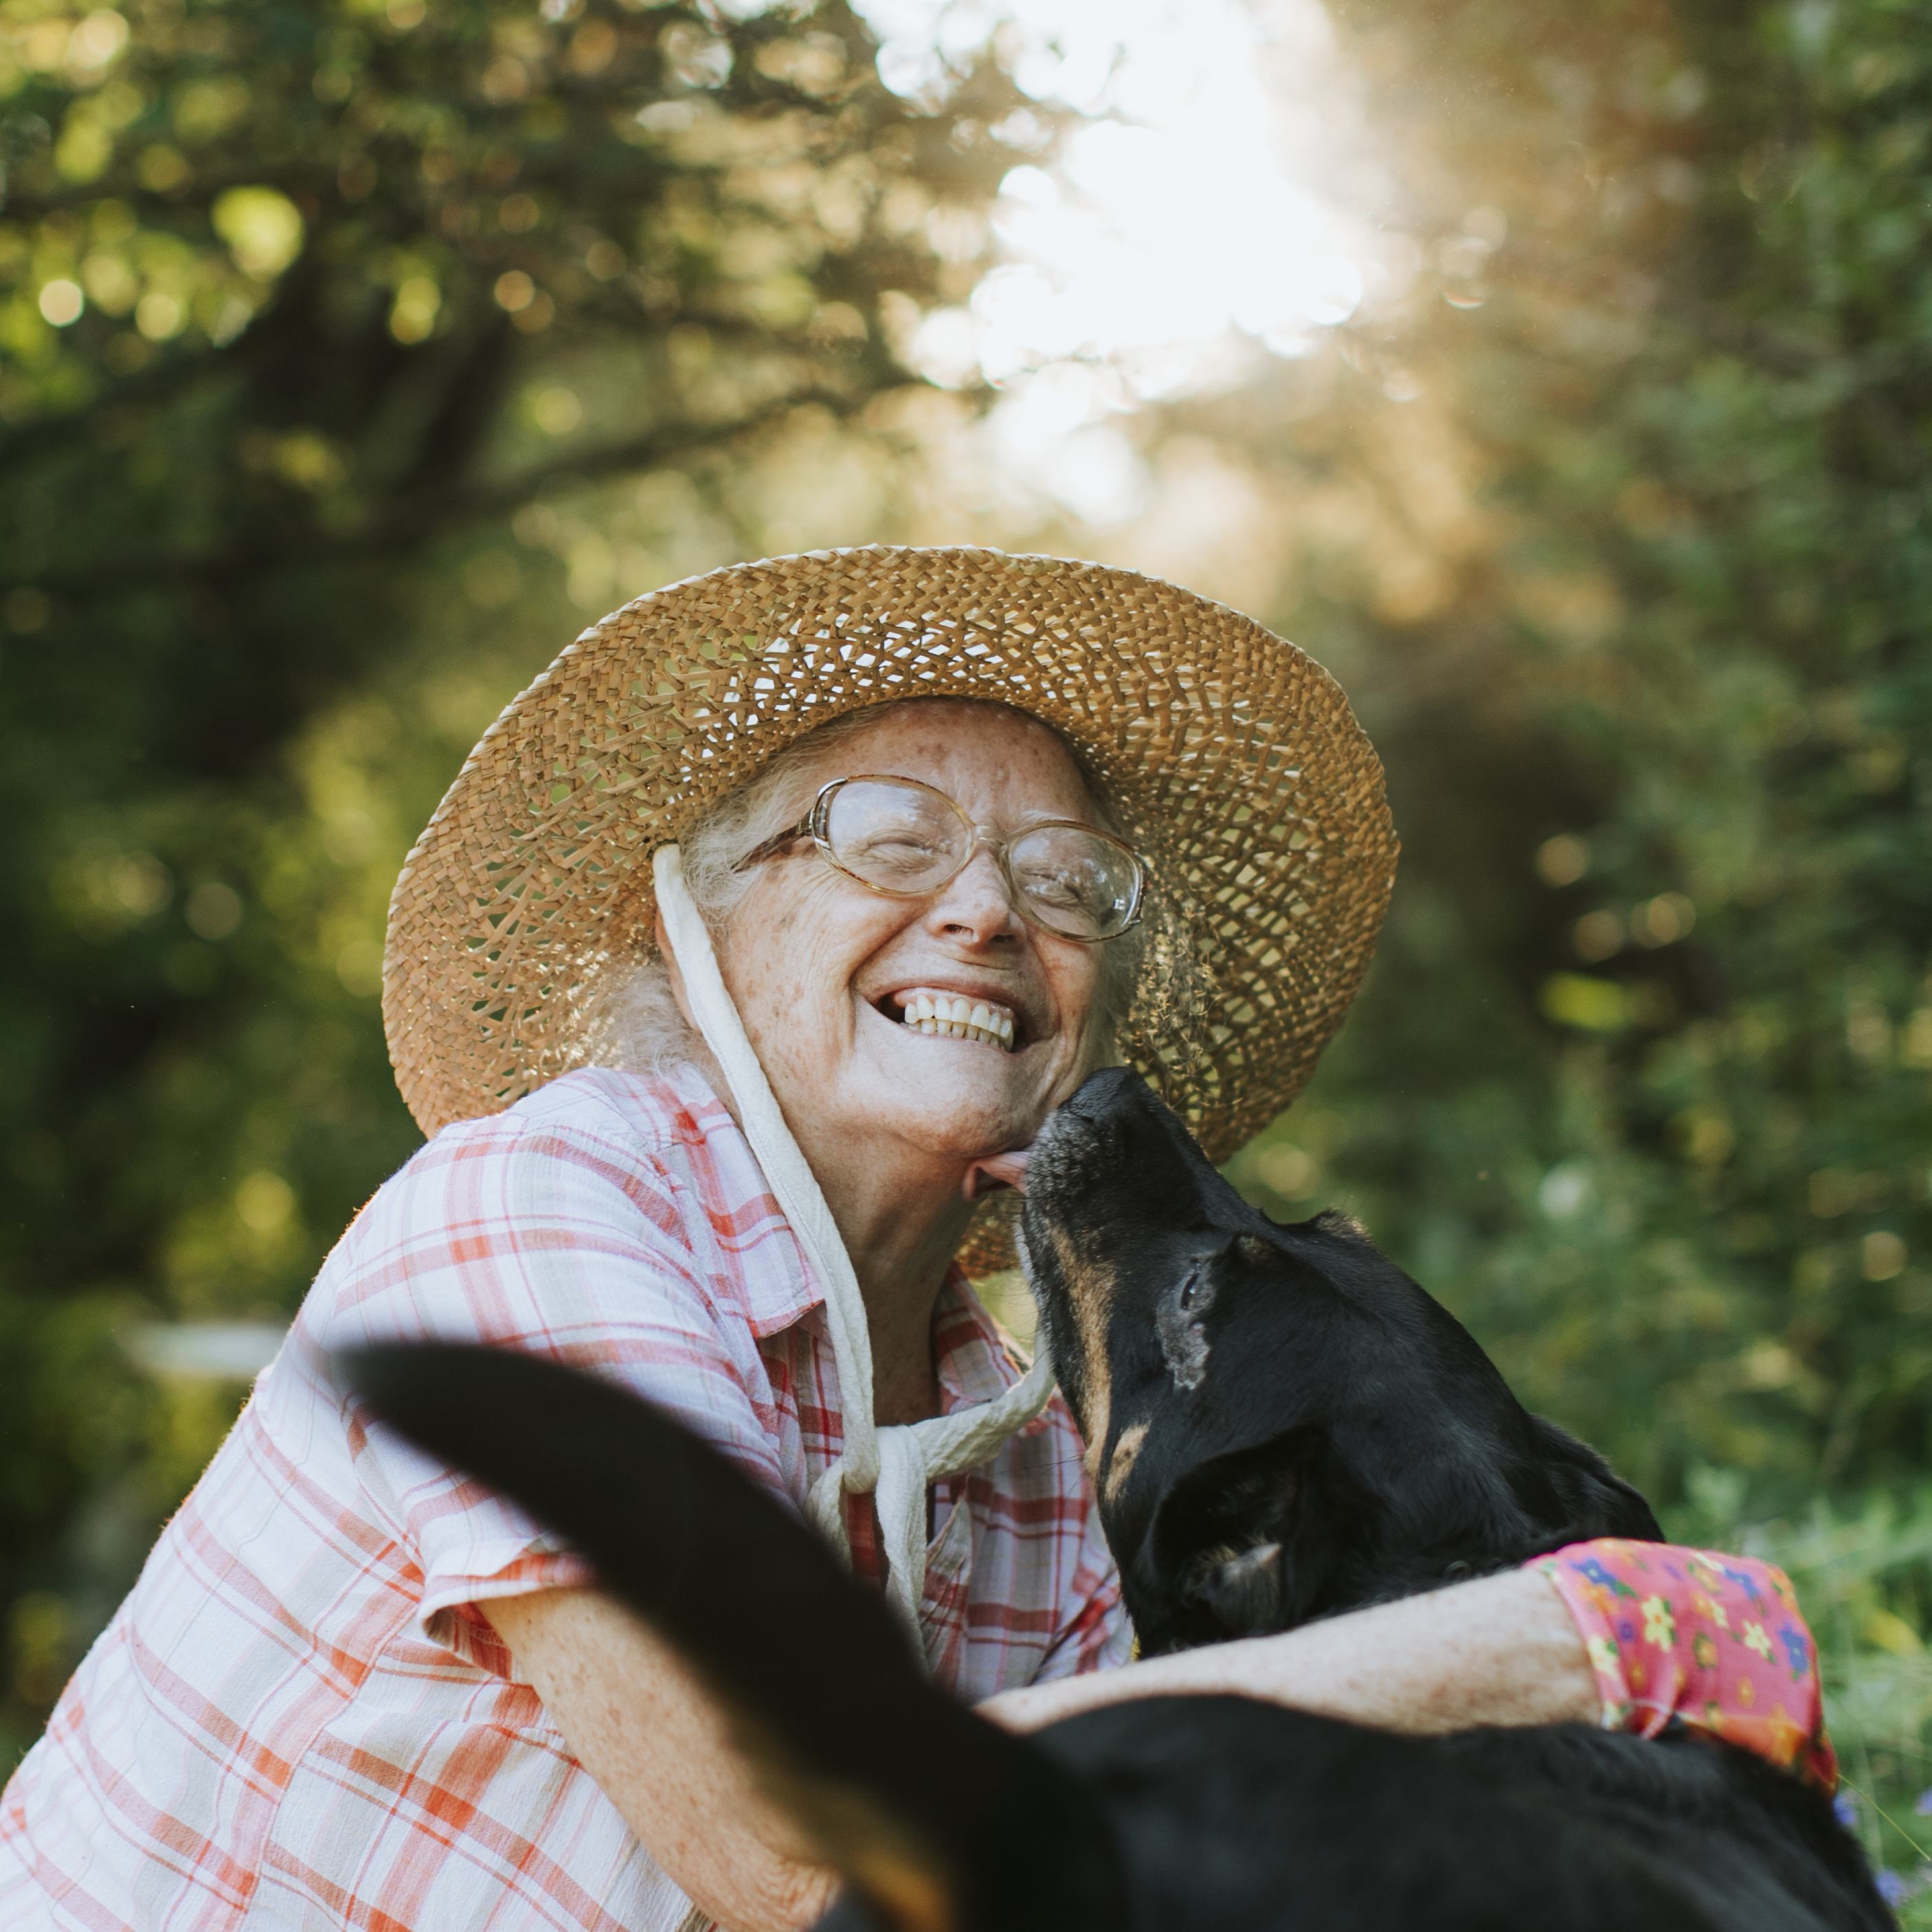 Eine ältere Frau ist draußen im Garten, lacht während ein Hund ihr Gesicht ableckt.